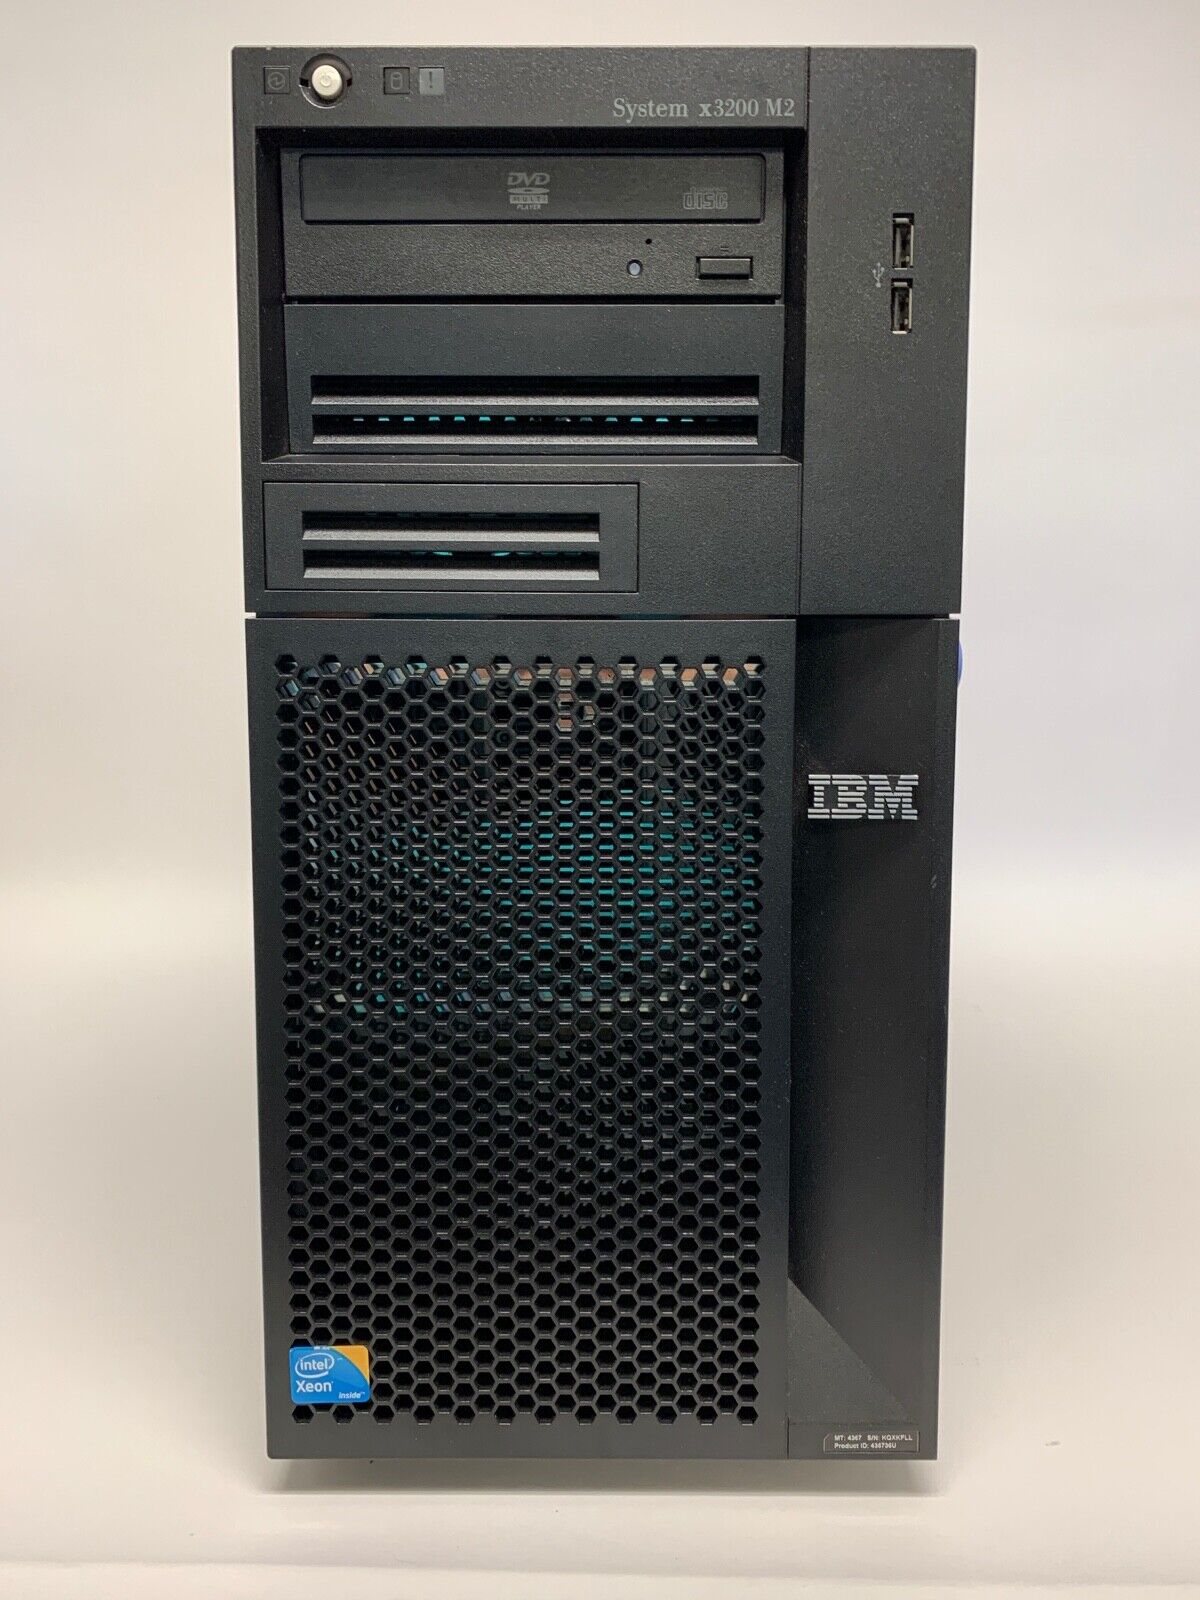 IBM SYSTEM x3200 M2 - HDD Removed